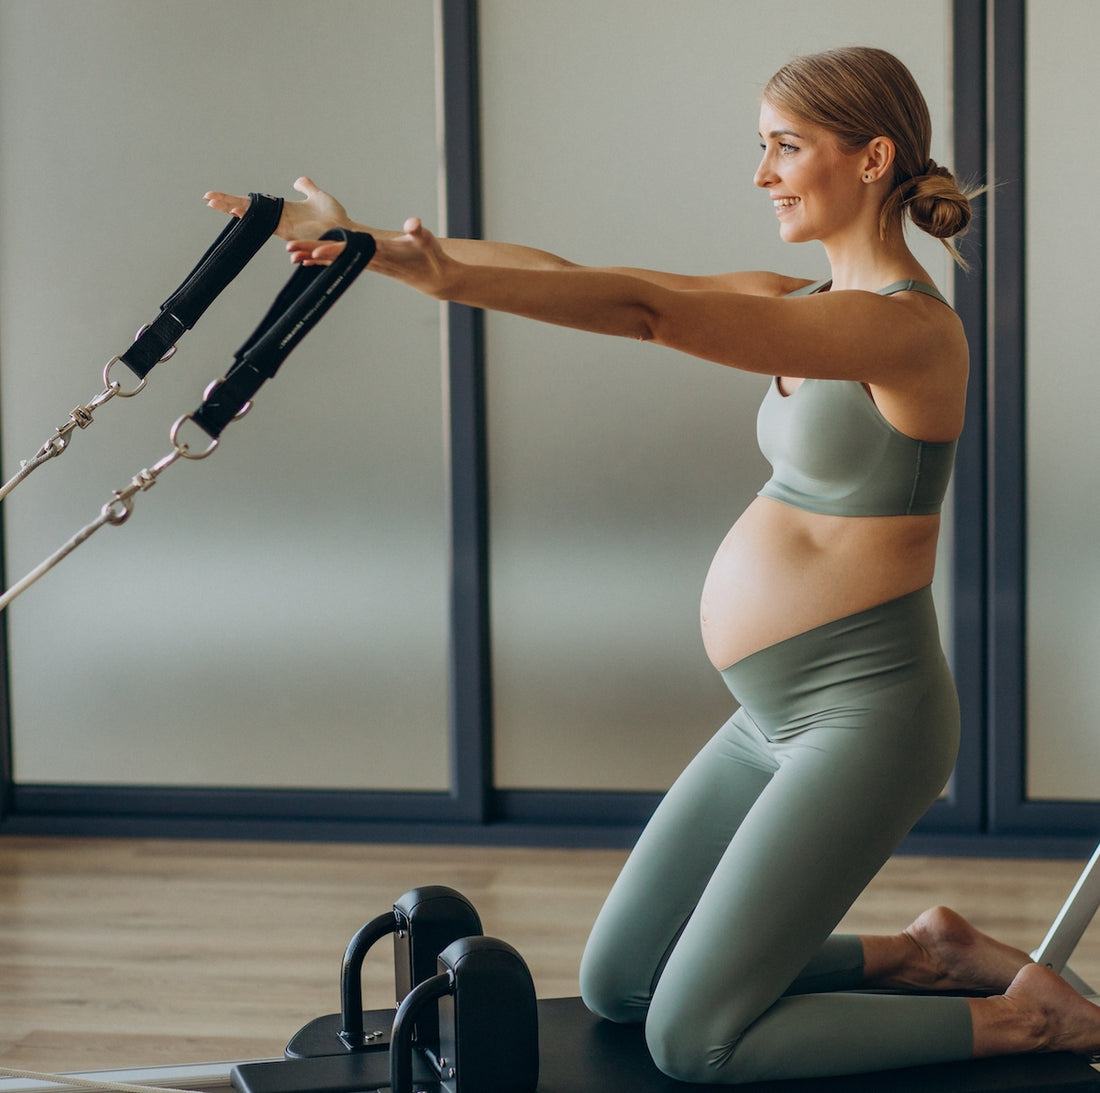 Is Reformer Pilates Safe for Pregnancy?